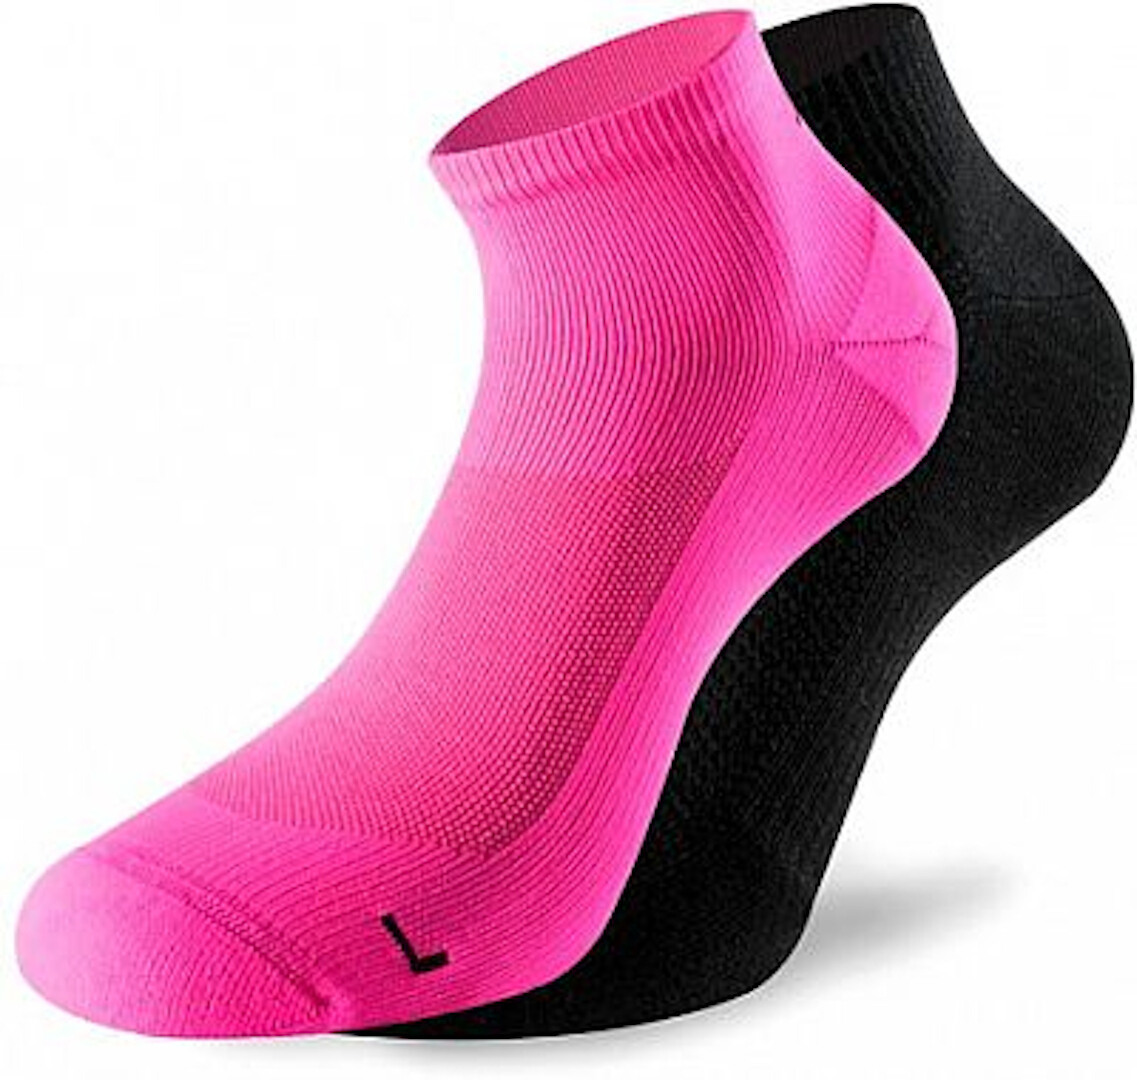 Lenz 3.0 Running Socken, schwarz-pink, Größe 39 - 41